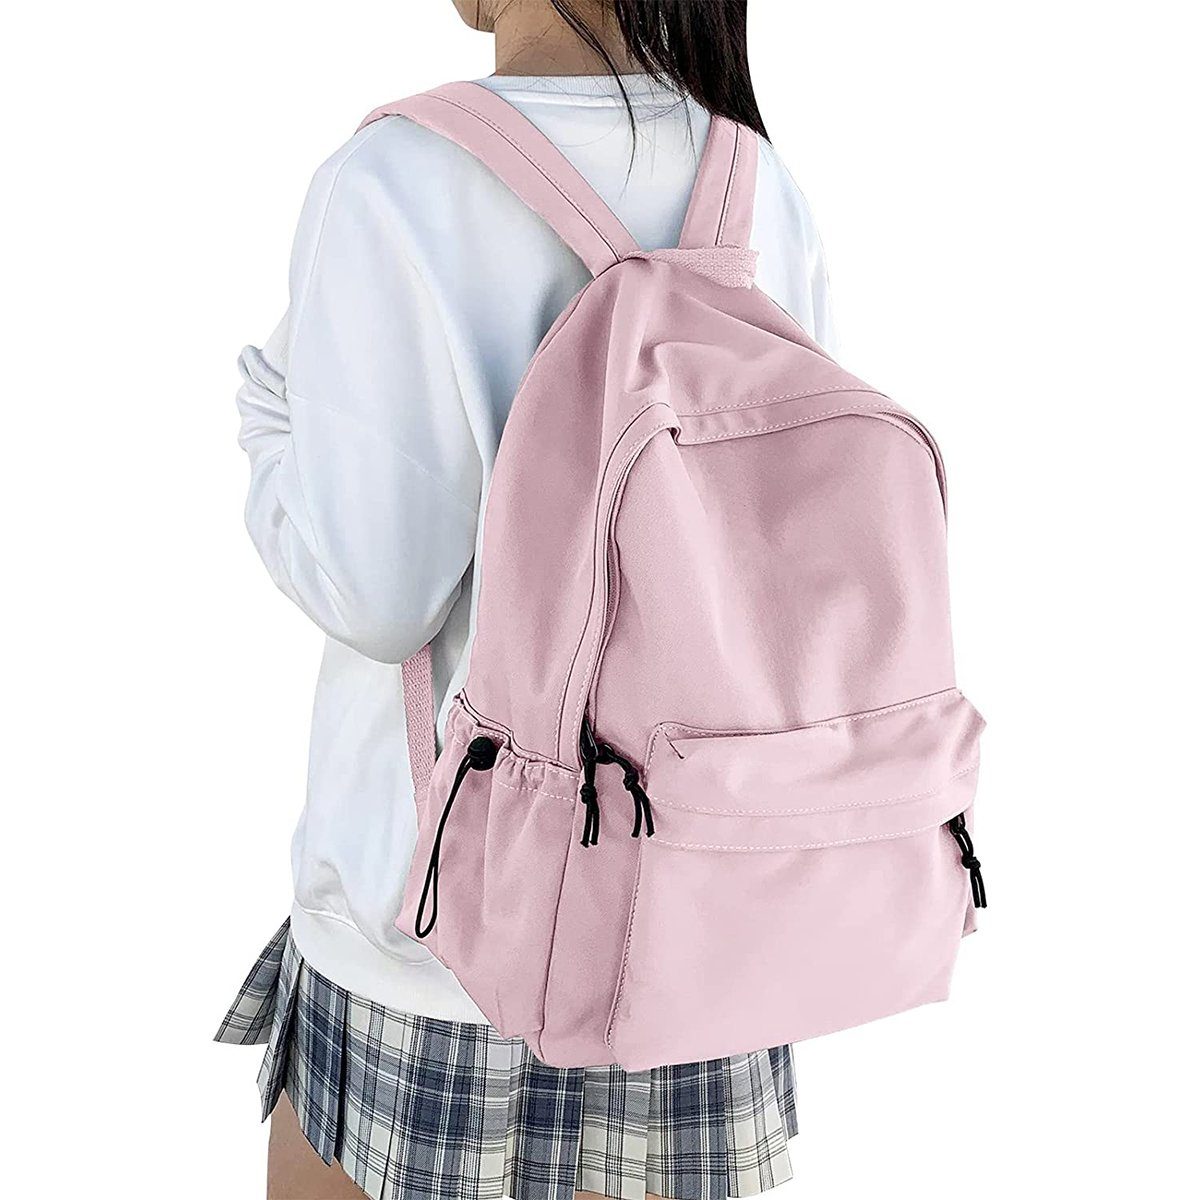 XDeer Schulrucksack Schulrucksack Damen Travel Schultaschen, 15,6 Zoll Laptop Rucksack für Mädchen im Teenageralter Bookbag Rosa | Schulrucksäcke